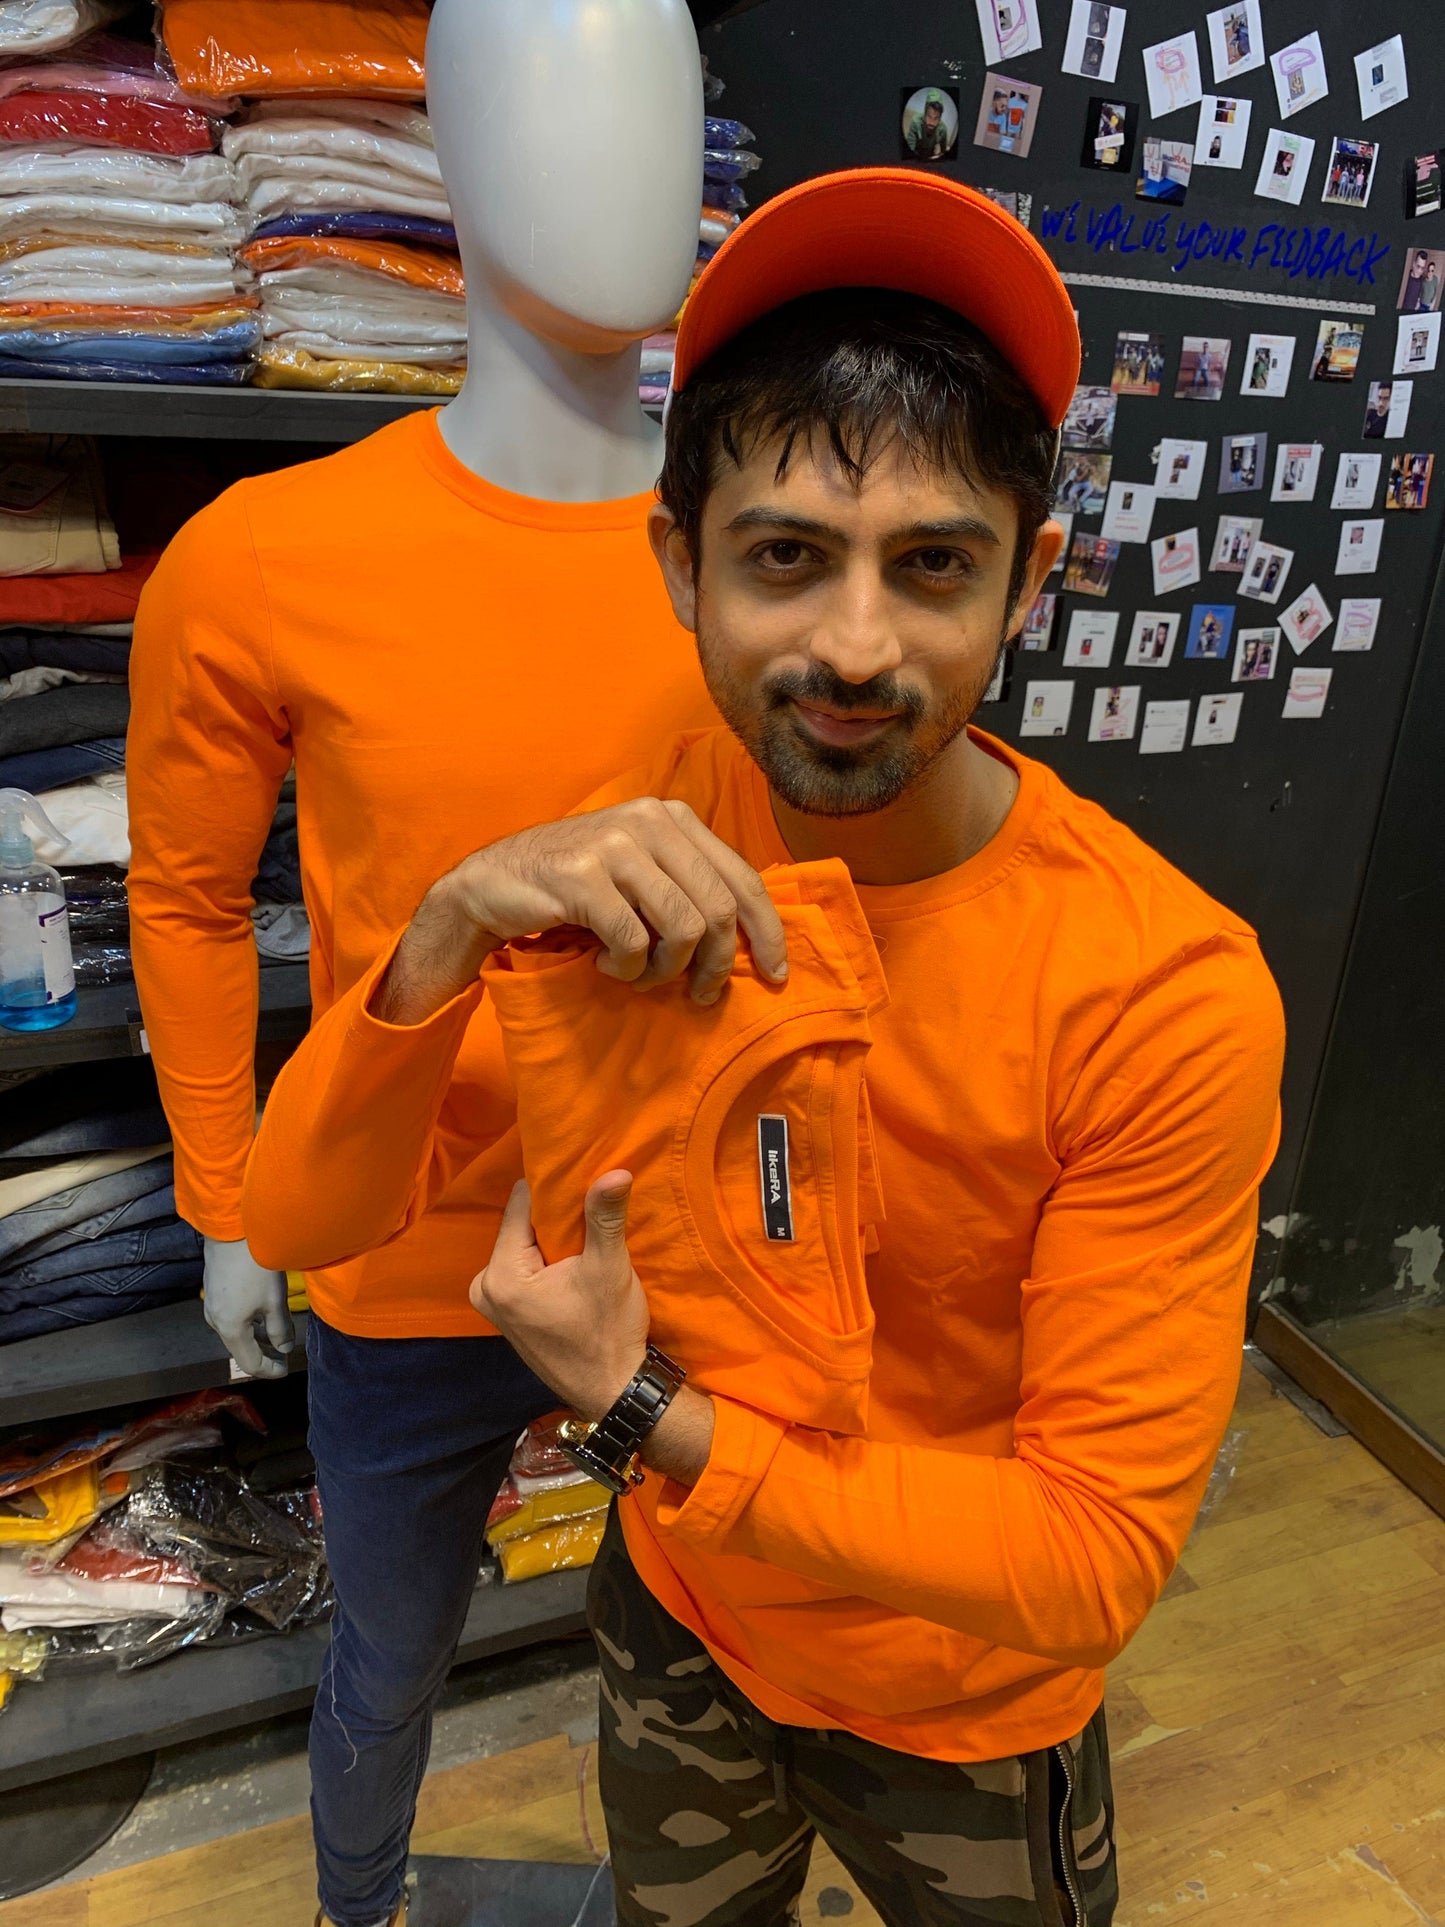 Orange Basic Cotton Full Sleeves Tshirt